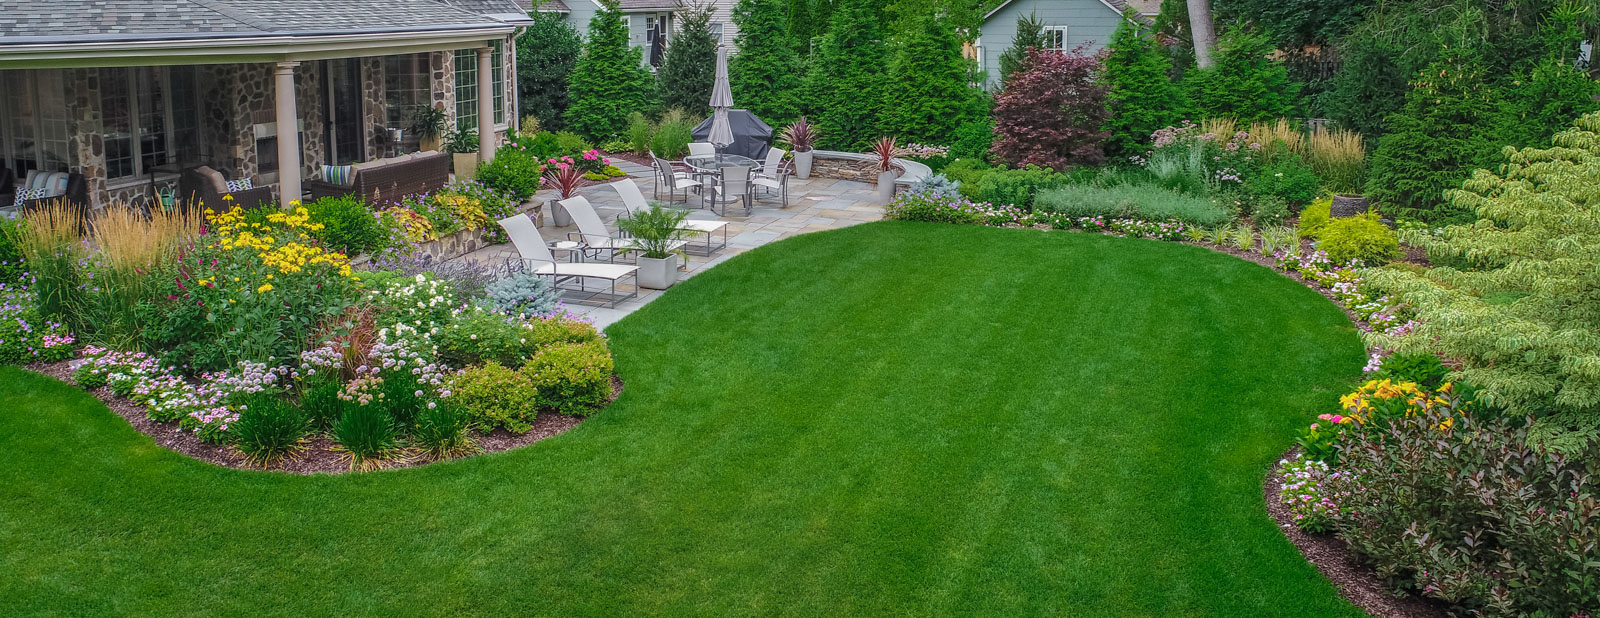 nj backyard landscape, patio, plantings, lush lawn